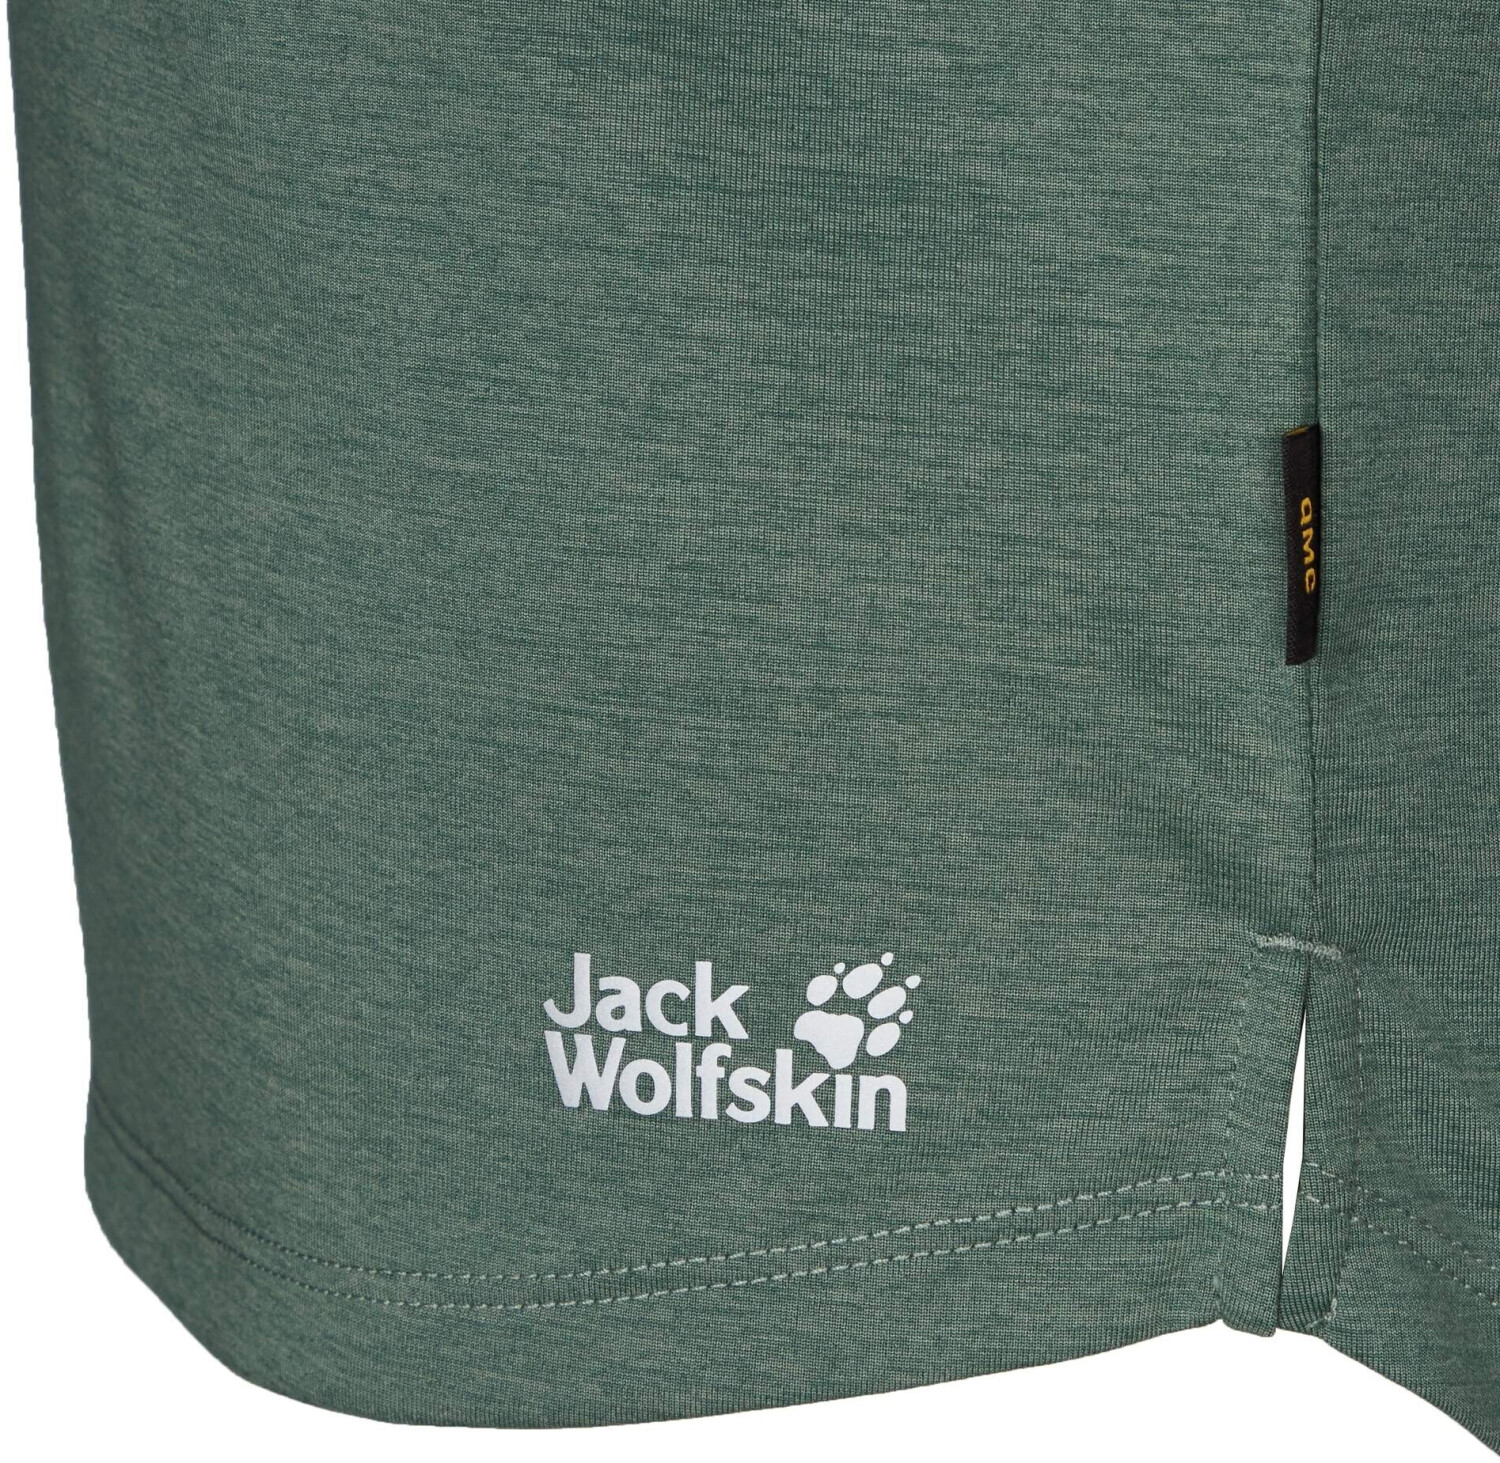 Jack Wolfskin Pack & Go 3/4 T W (1806654) hedge green ab 26,00 € |  Preisvergleich bei